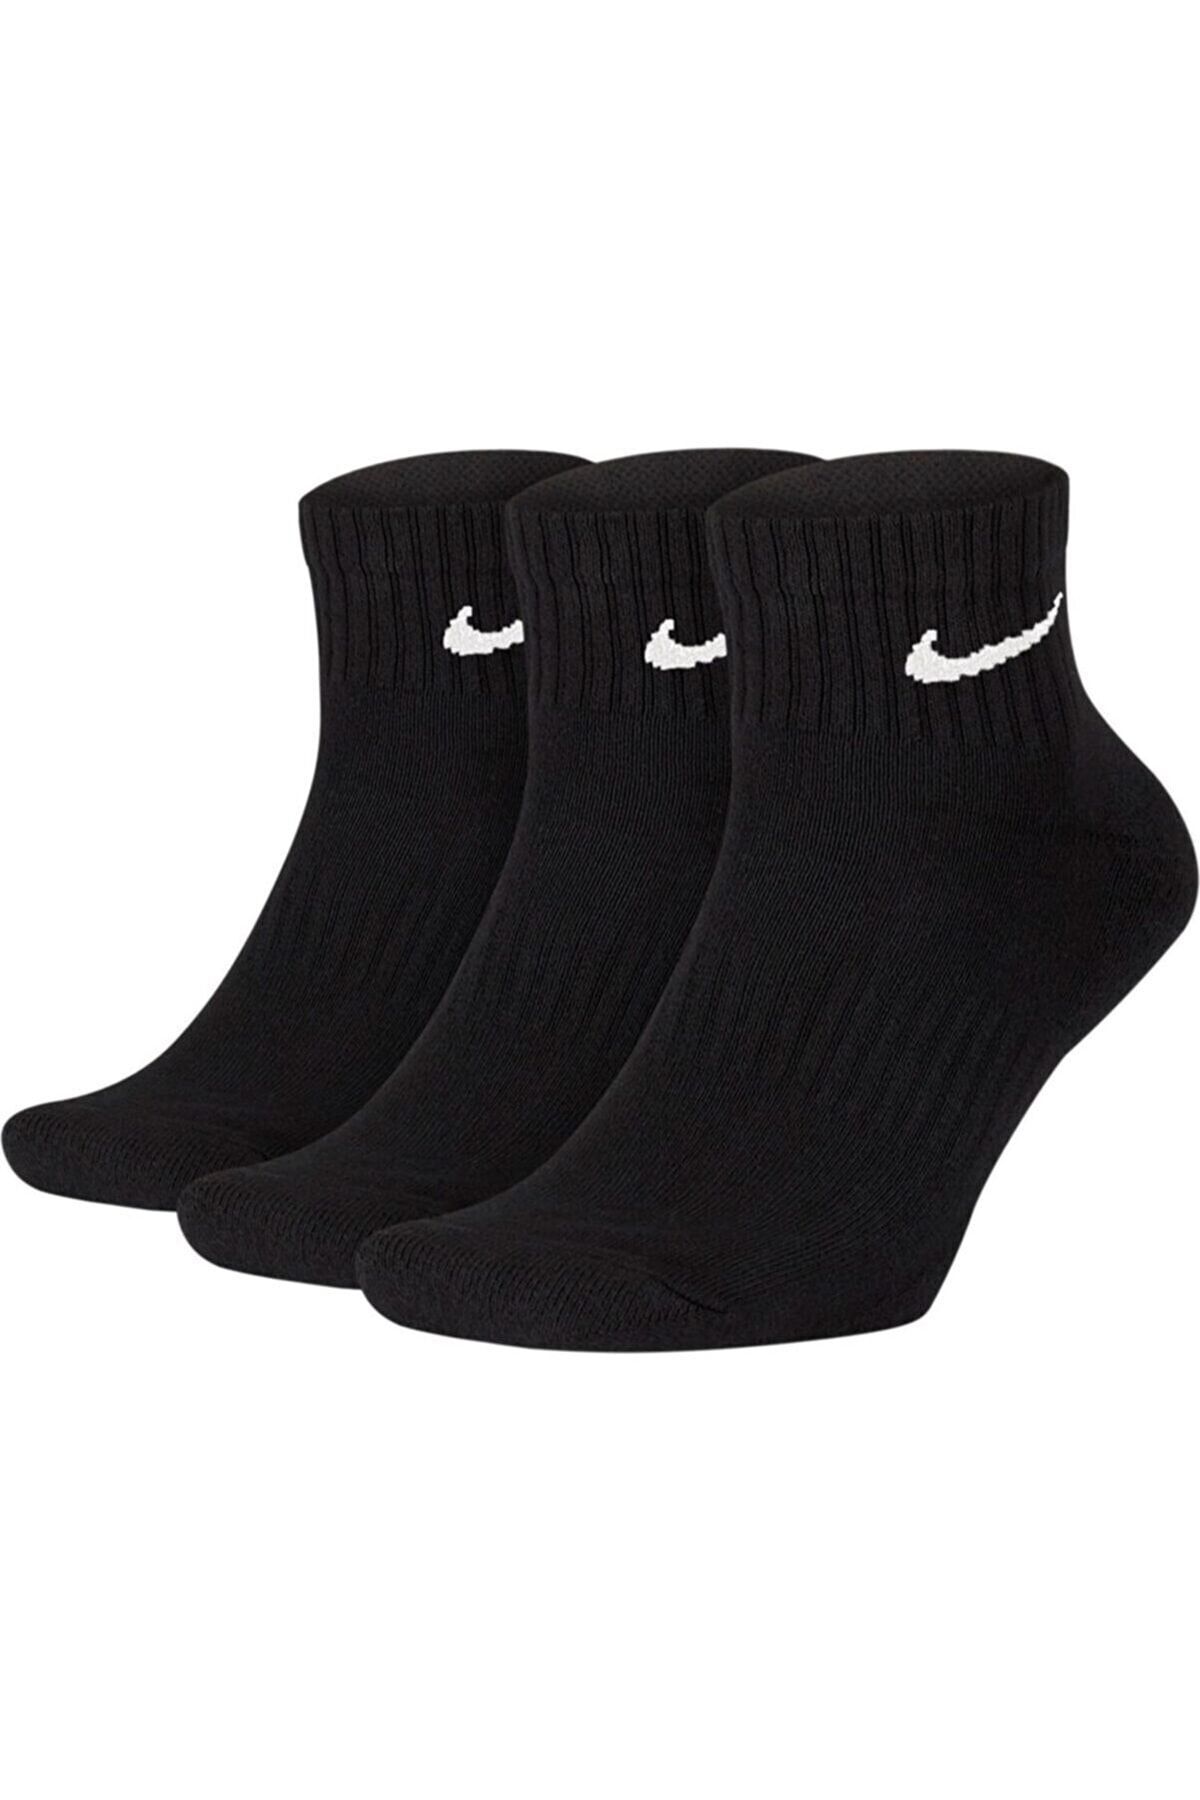 Nike 7667 Çorap 3'lü/sıyah/42-46 Numara